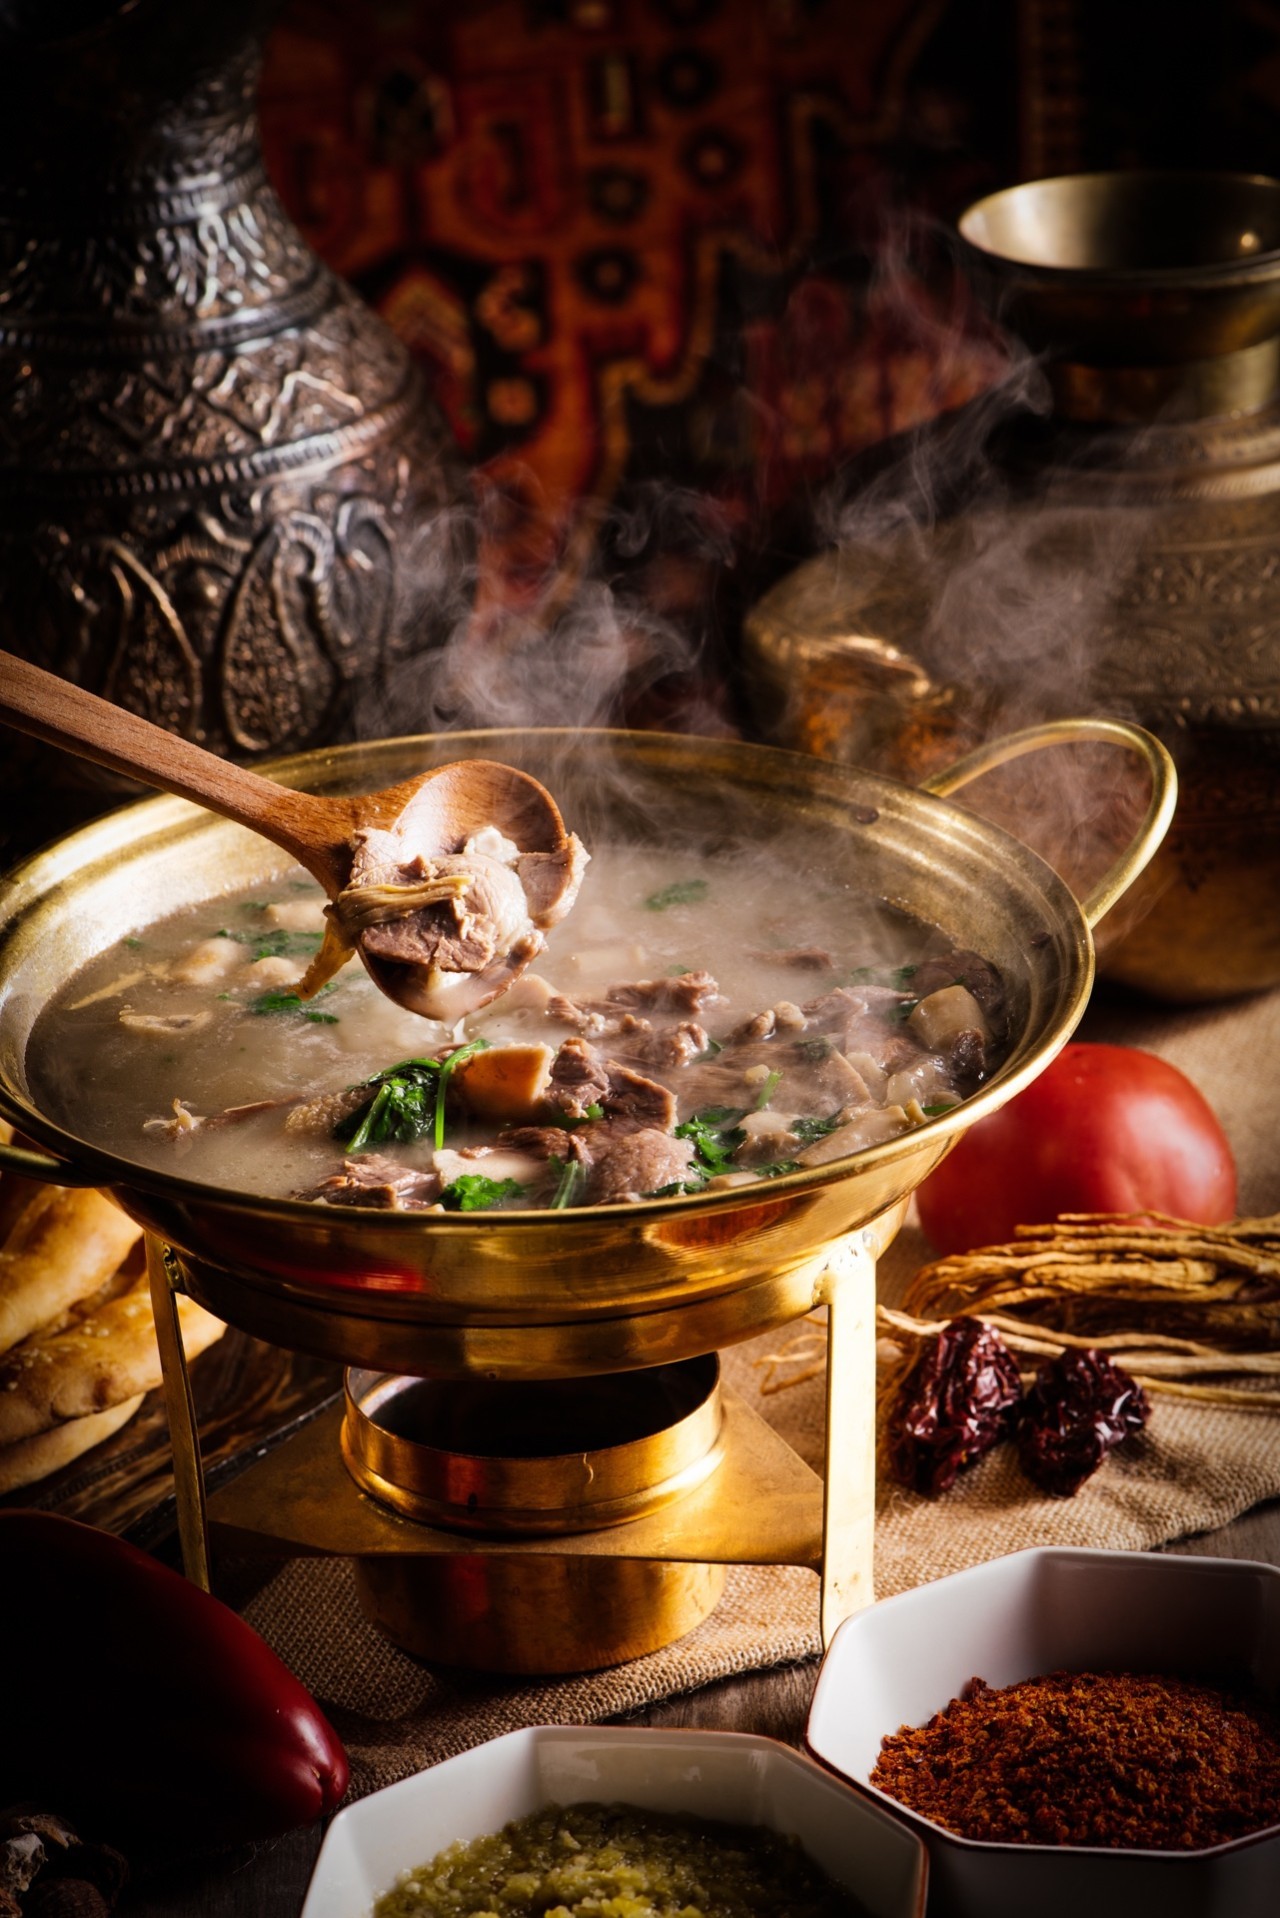 来自北疆高山牧场的优质羊肉,加以铜锅烹饪,鲜美的羊肉与浓浓的汤汁